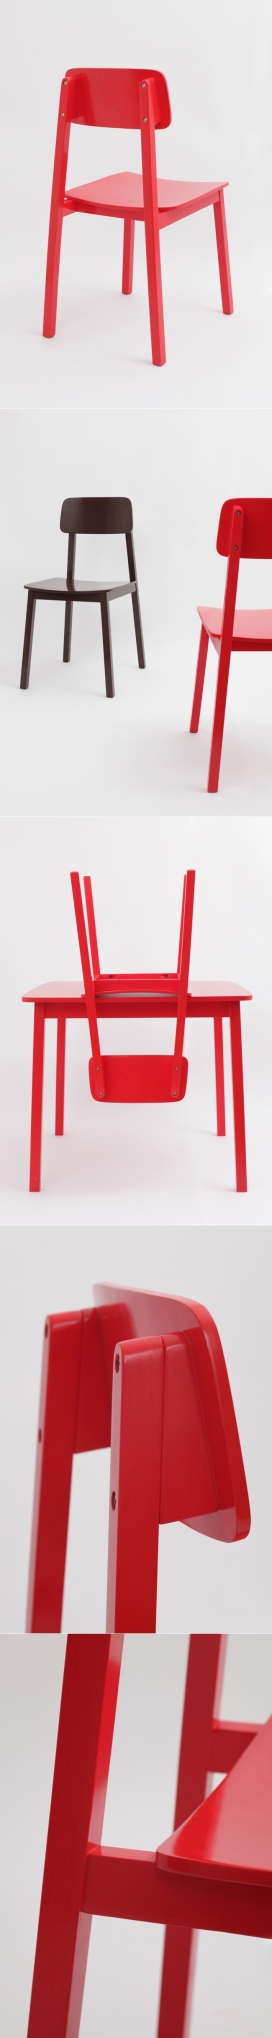 漆木家具椅子凳子设计-法国巴黎Guillaume Delvigne设计师作品